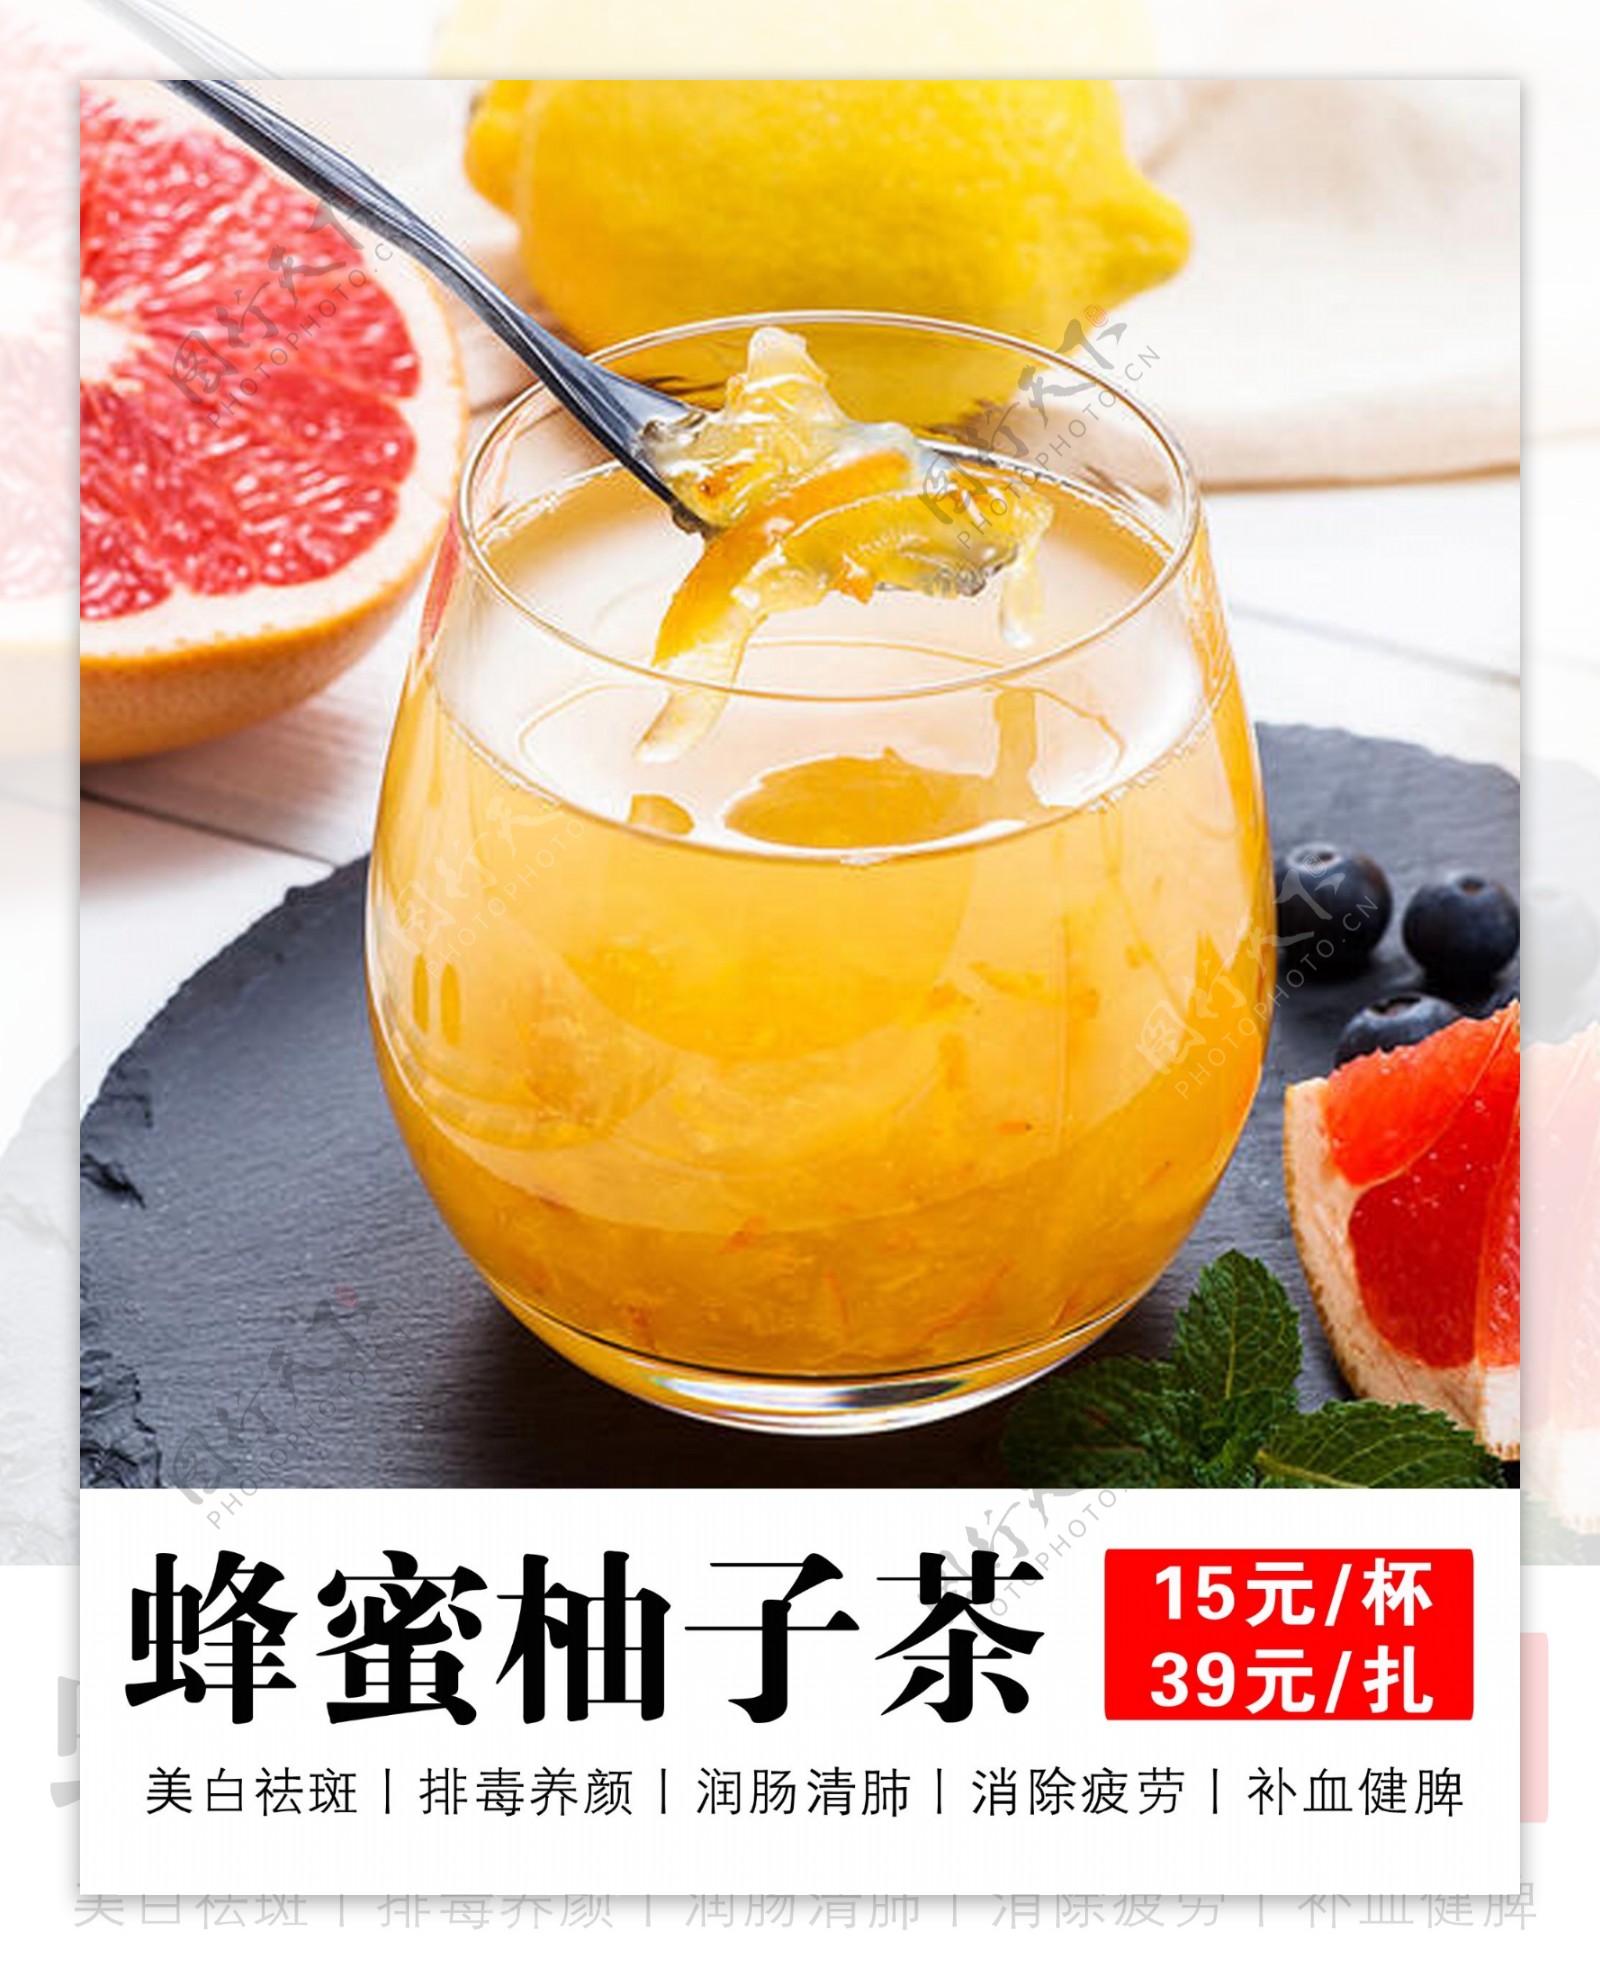 韓国高興産 柚子茶 3瓶 グルメ・お酒 飲み物(ジュース・柚子茶など) お茶／柚子茶 韓国高興産 柚子茶|通販・テレビショッピングのショップチャンネル